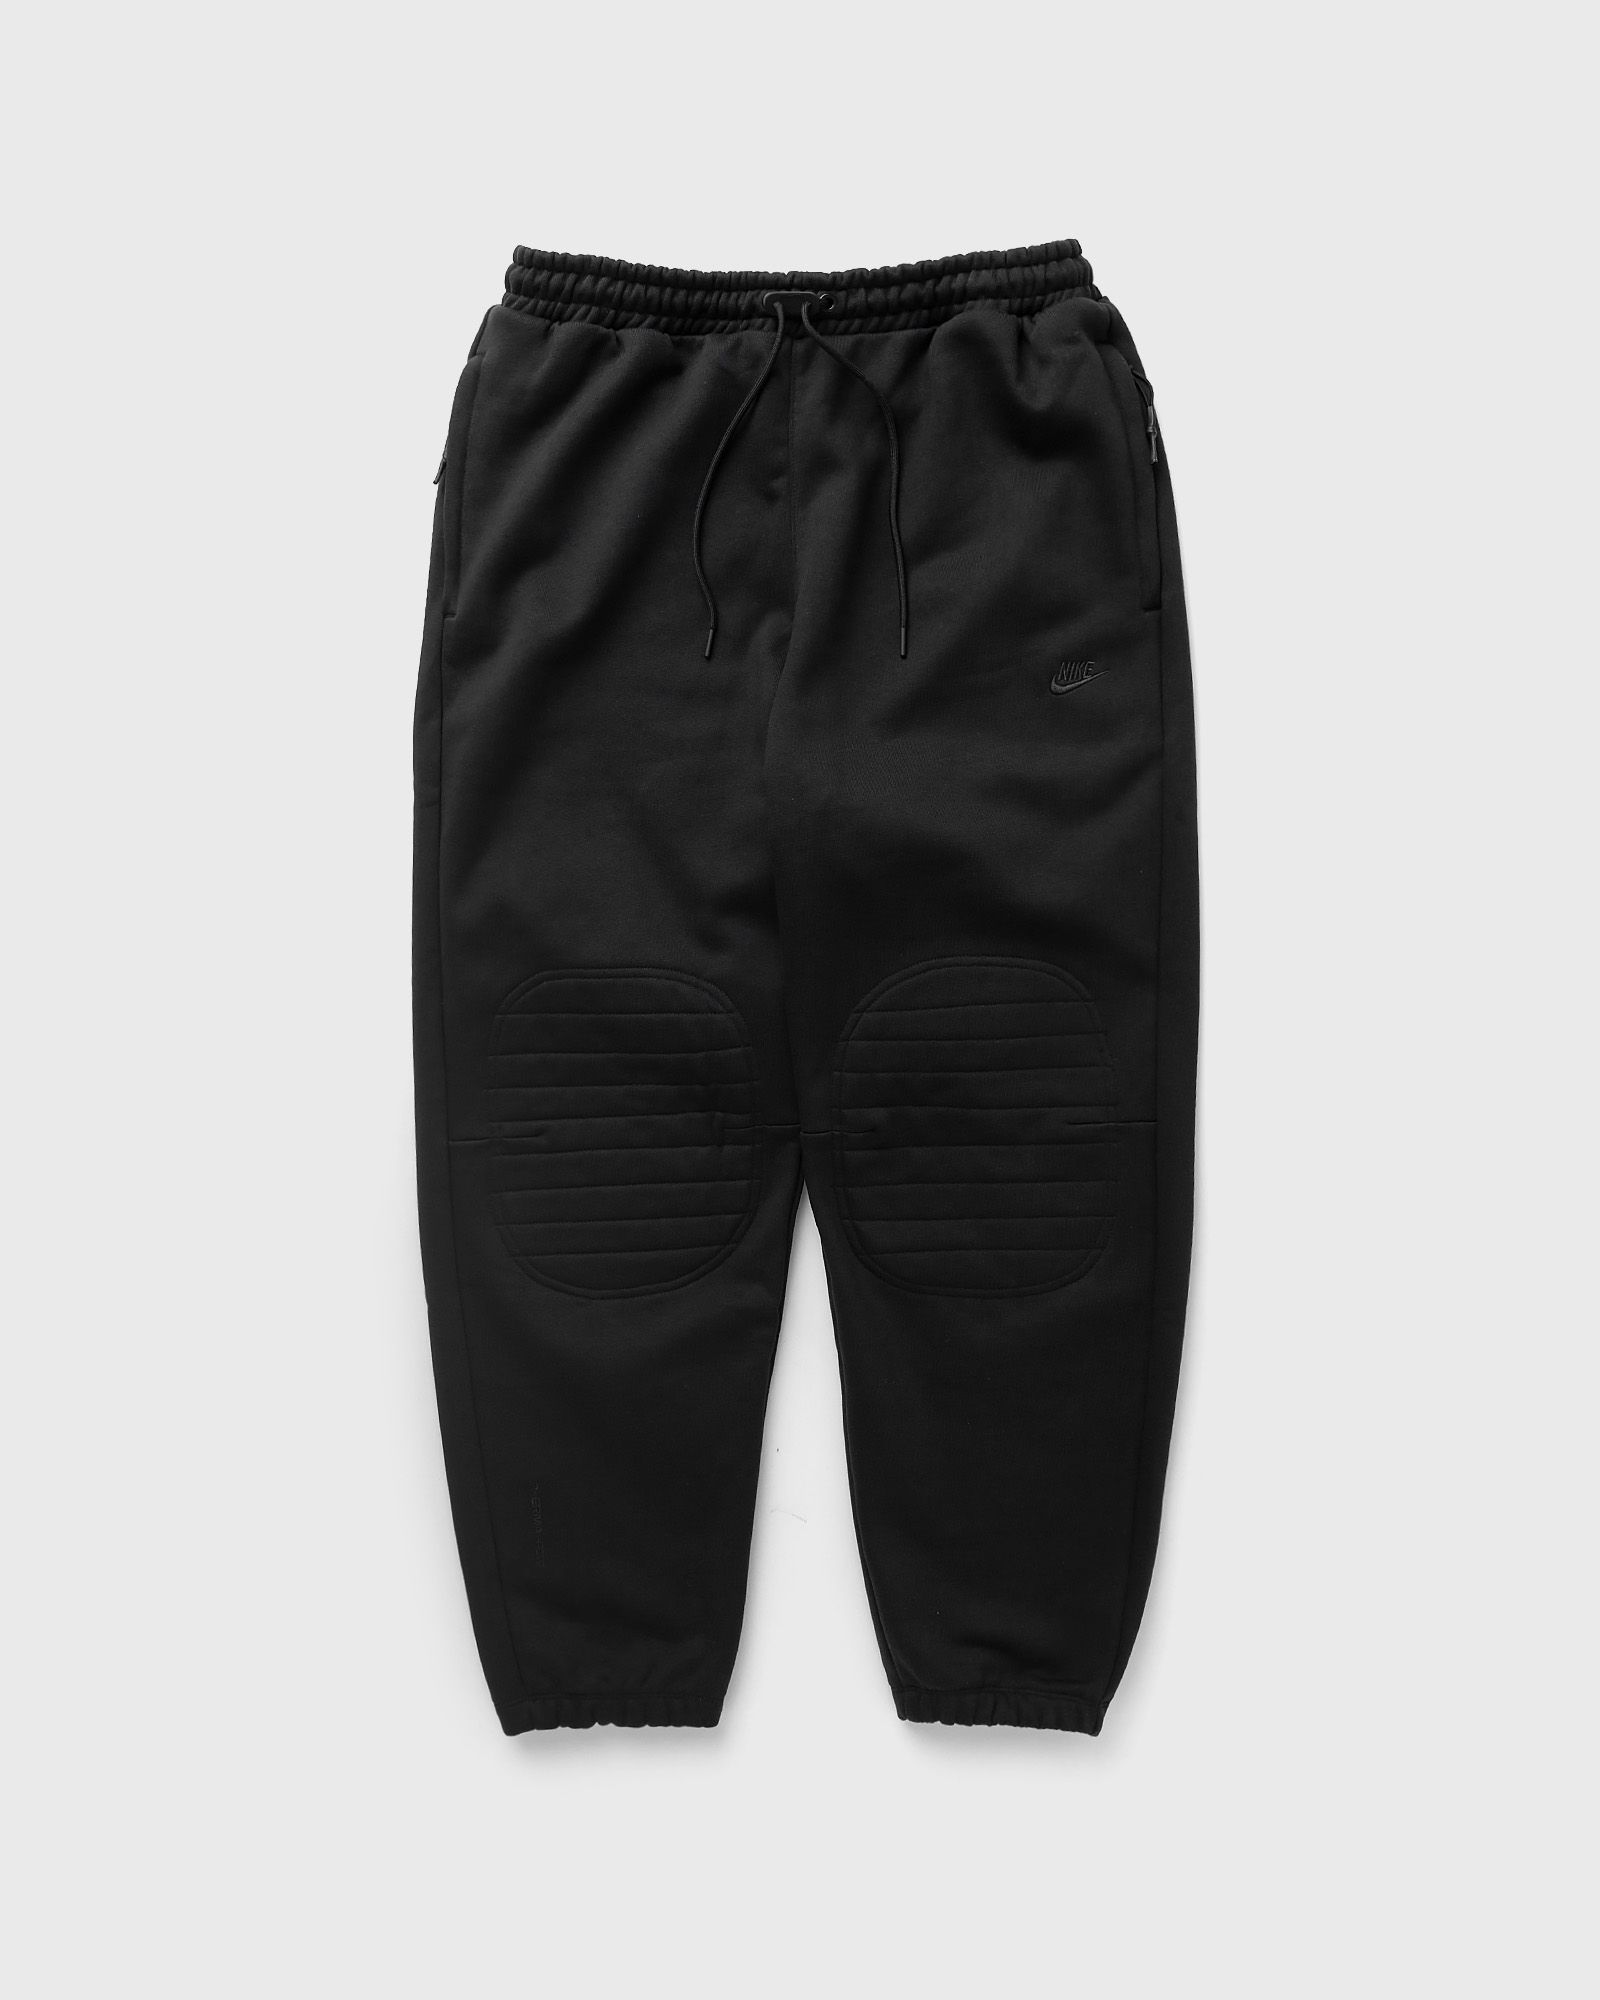 Nike - sportswear therma-fit tech pack men's winterized pants men sweatpants black in größe:xl